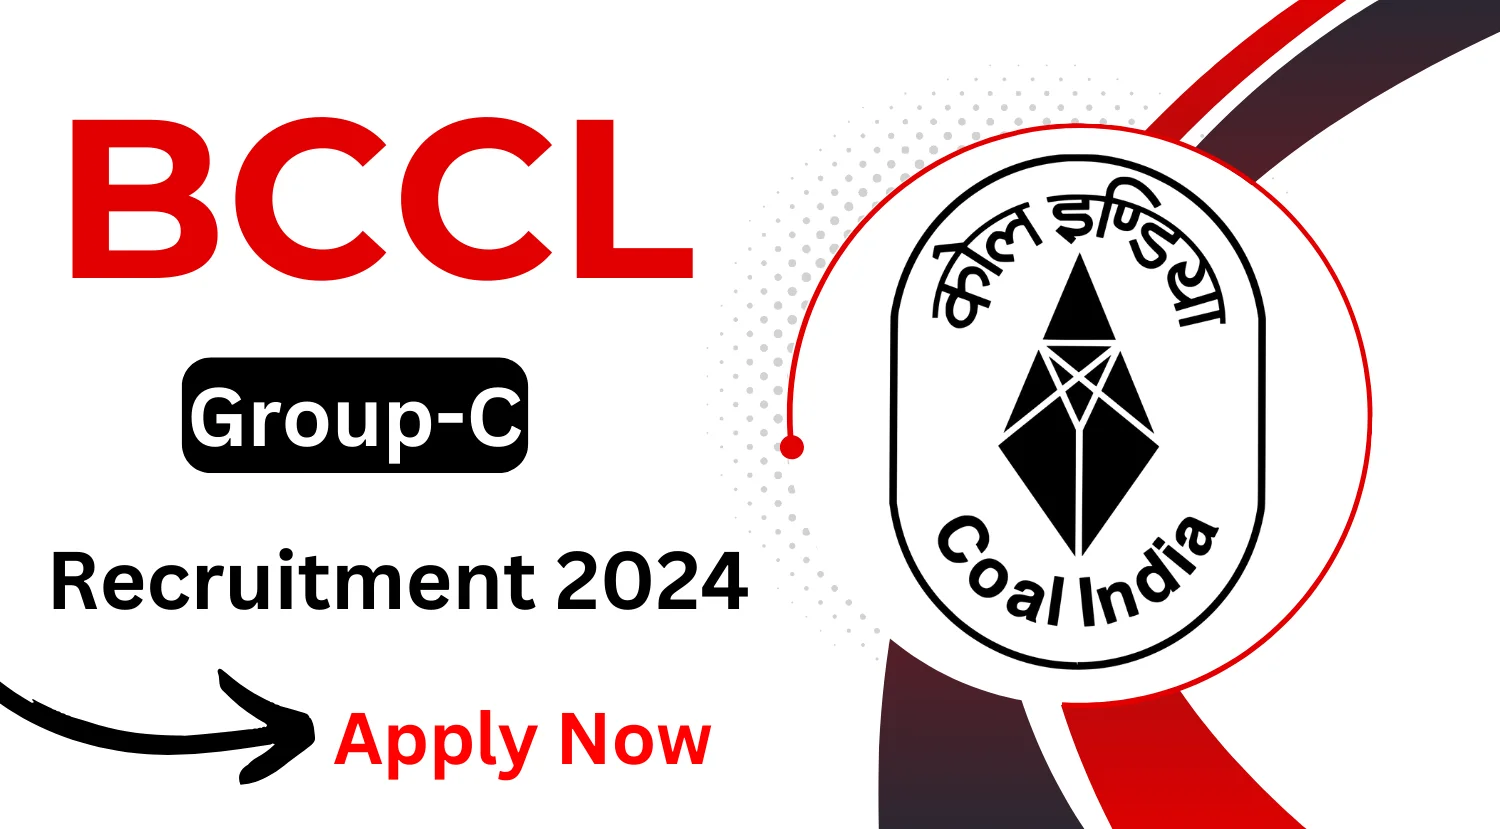 BCCL Group-C Recruitment 2024